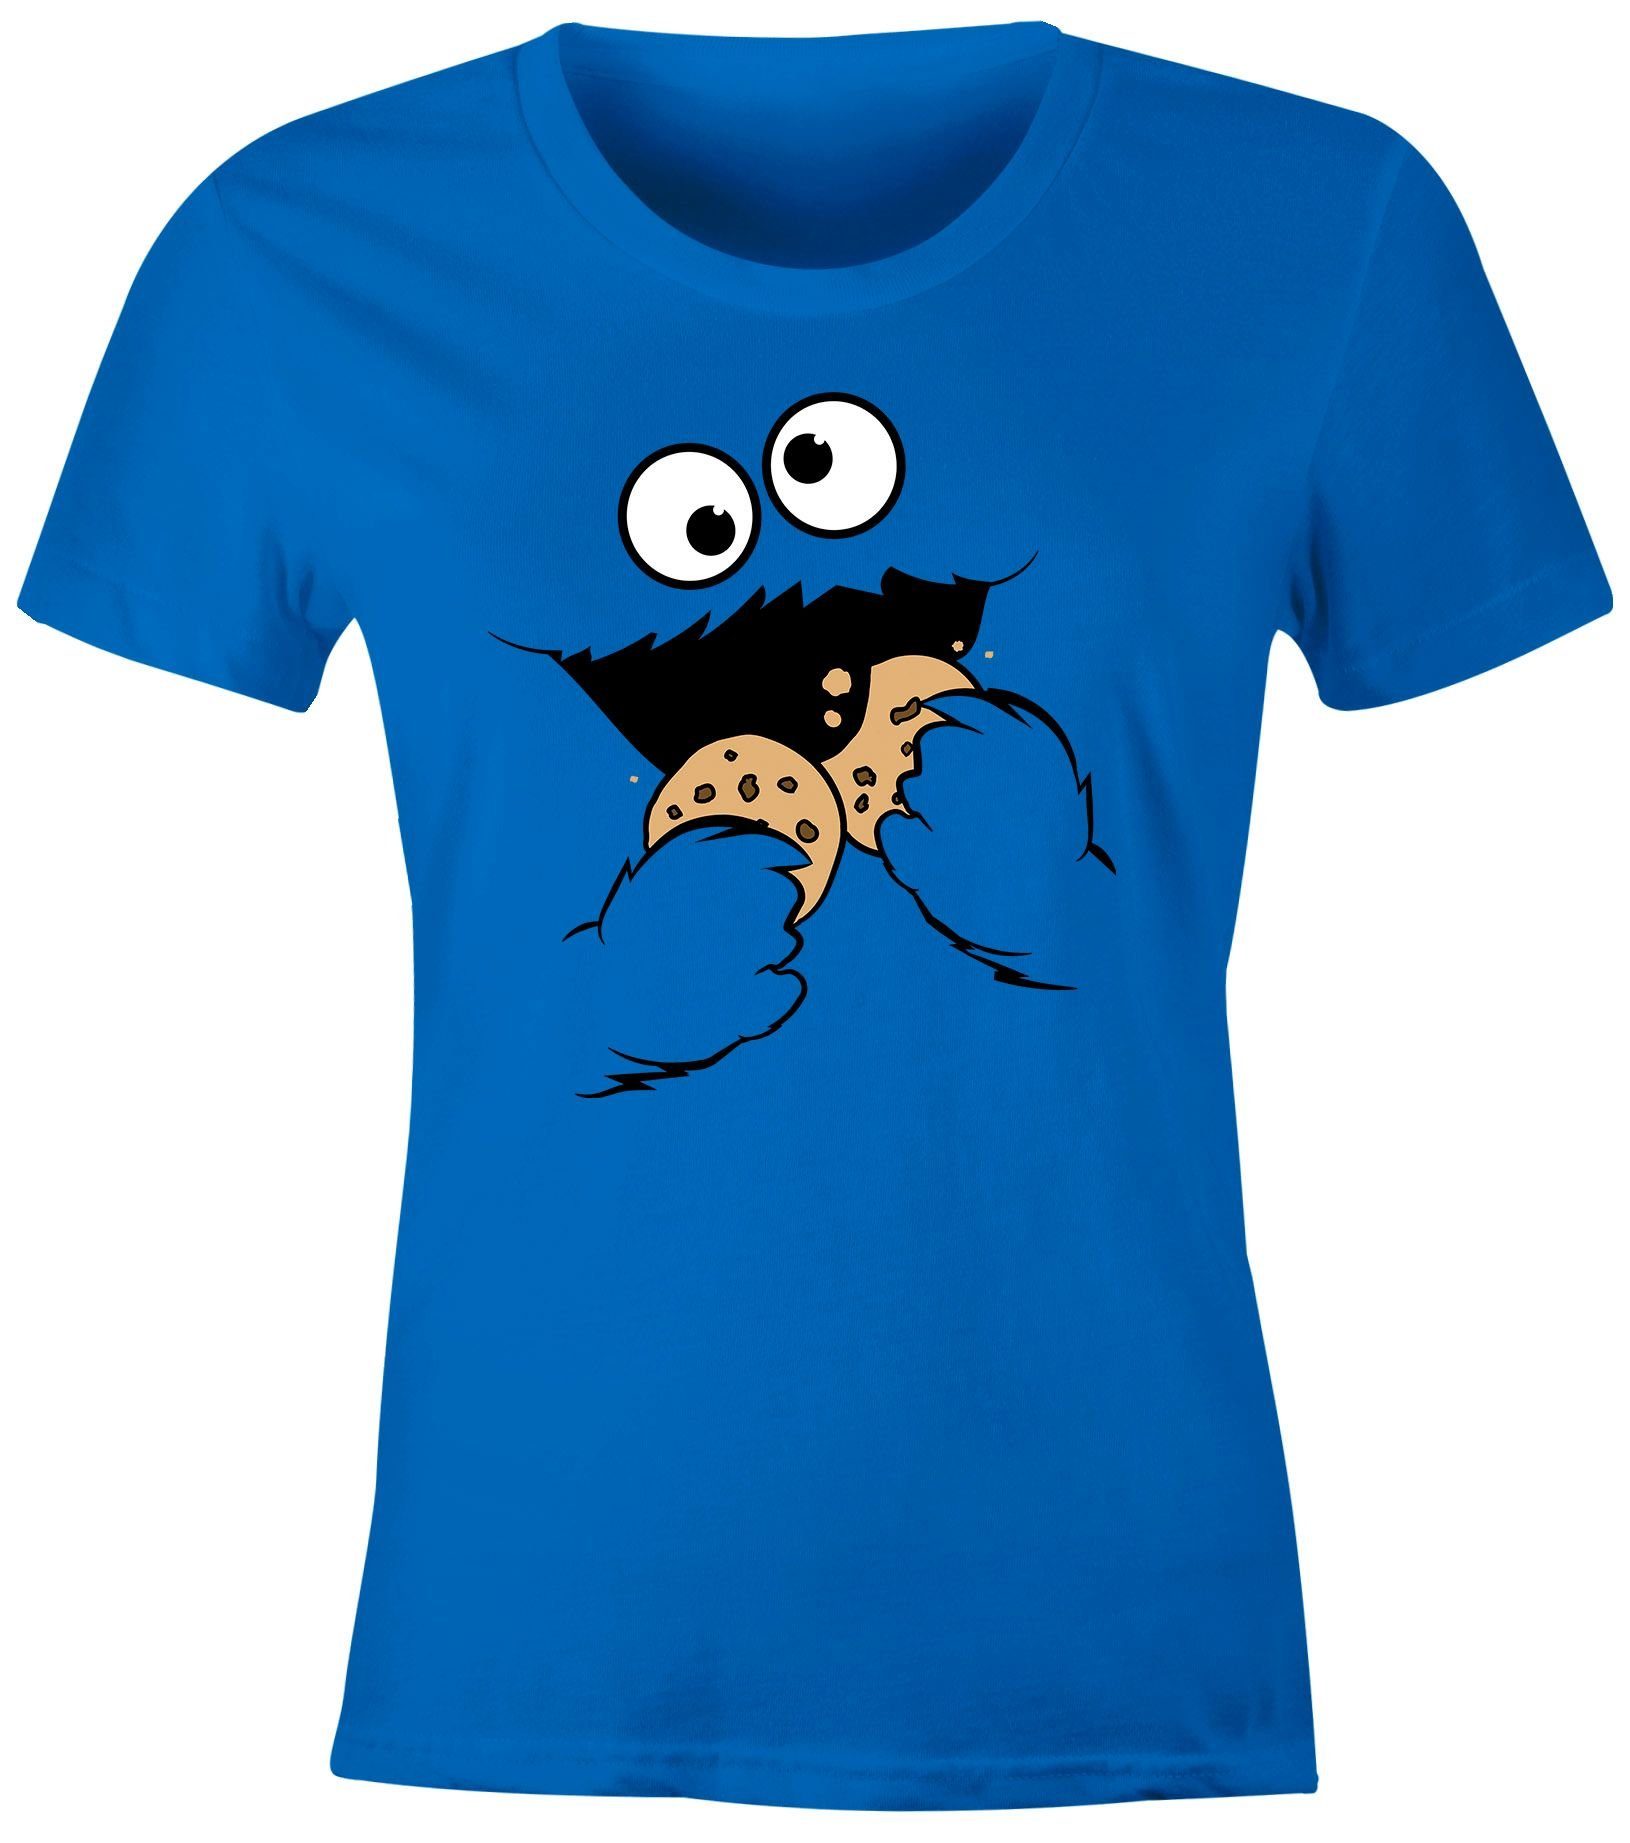 MoonWorks Print-Shirt Damen T-Shirt Krümelmonster Keks Cookie Monster Fasching Karneval Kostüm Slim Fit Moonworks® mit Print